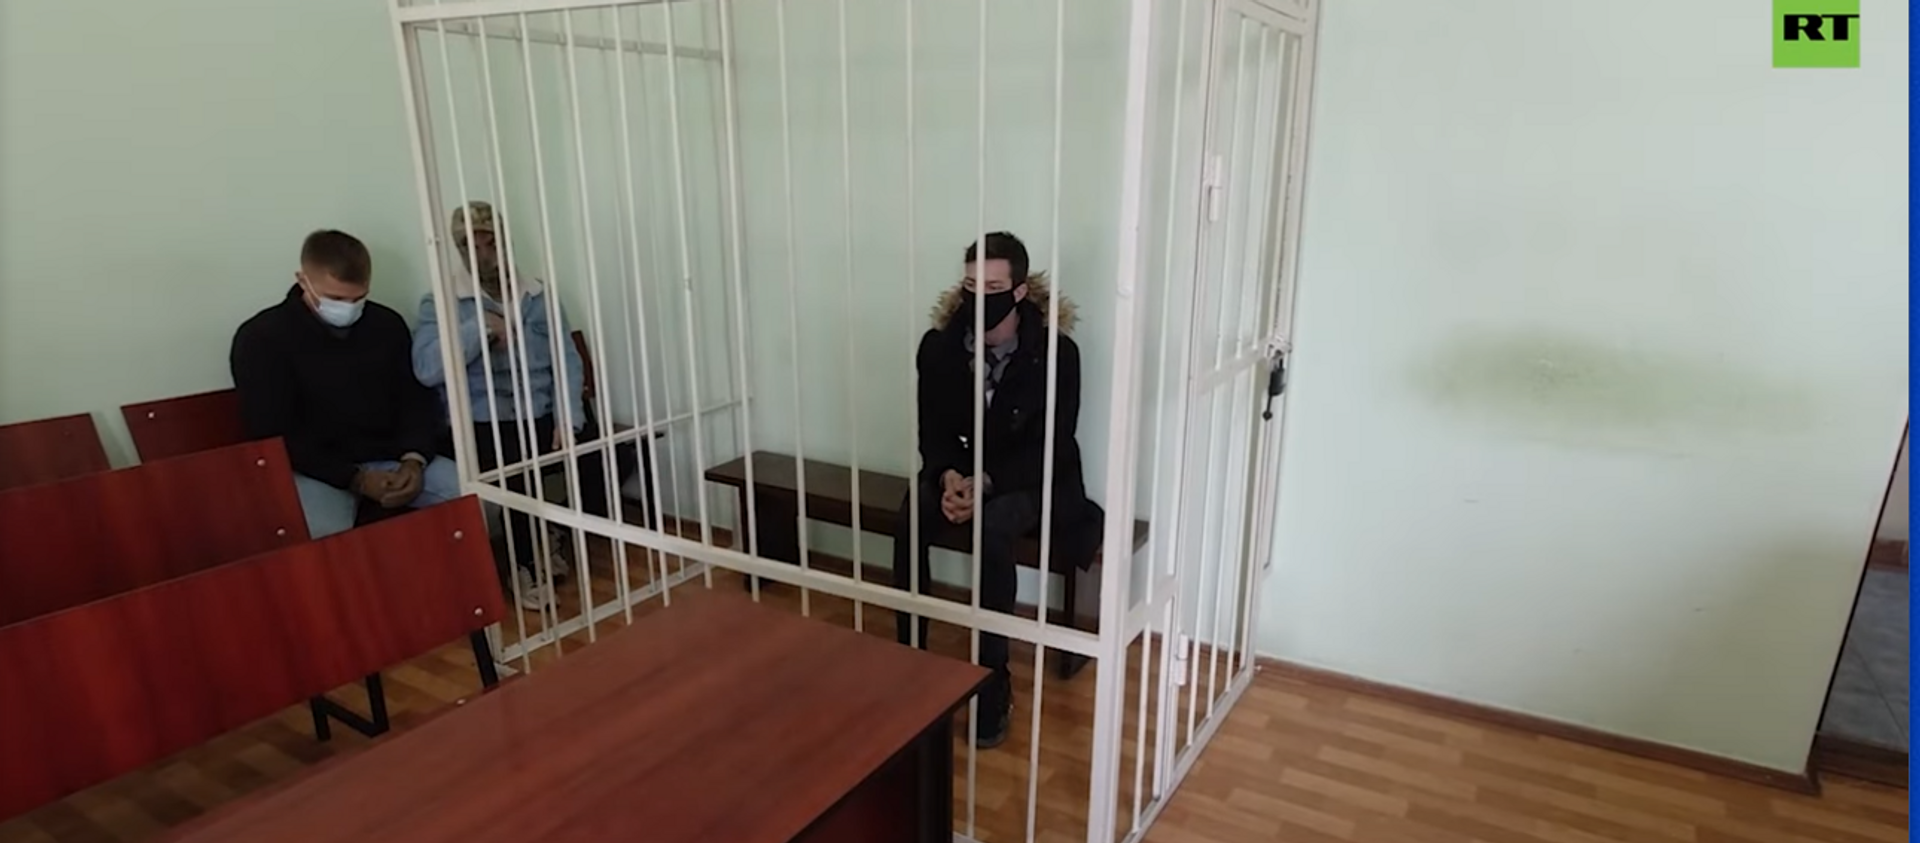 Задержание россиянина, подозреваемого в шпионаже в пользу Украины - Sputnik Абхазия, 1920, 22.04.2021